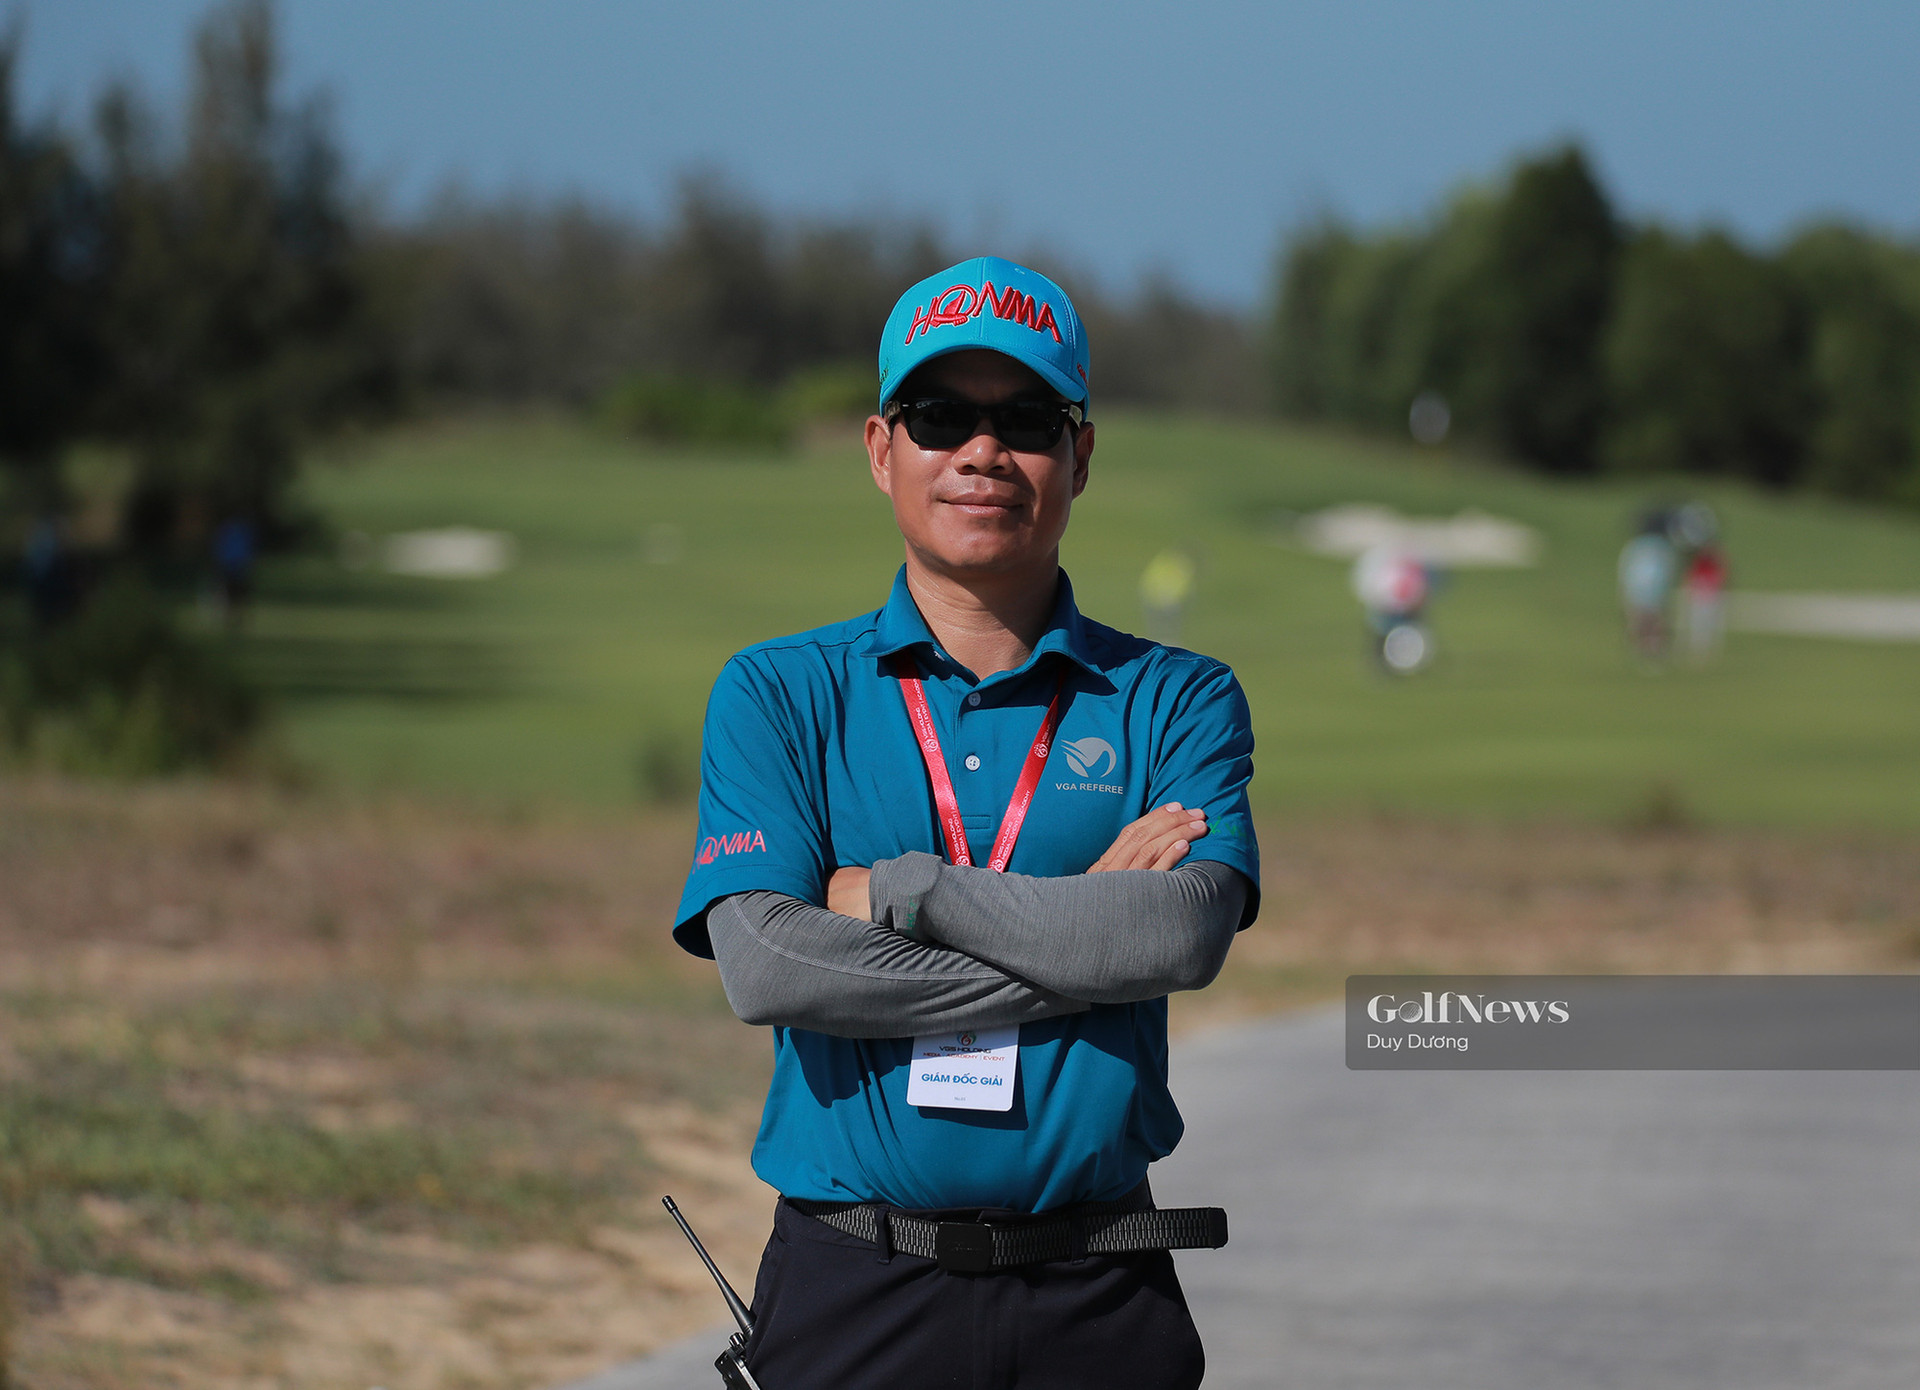 Trọng tài Phan Ngọc Tâm: Thiết lập kỹ thuật sân đấu là yếu tố quan trọng tại Ryder Cup - Ảnh 2.